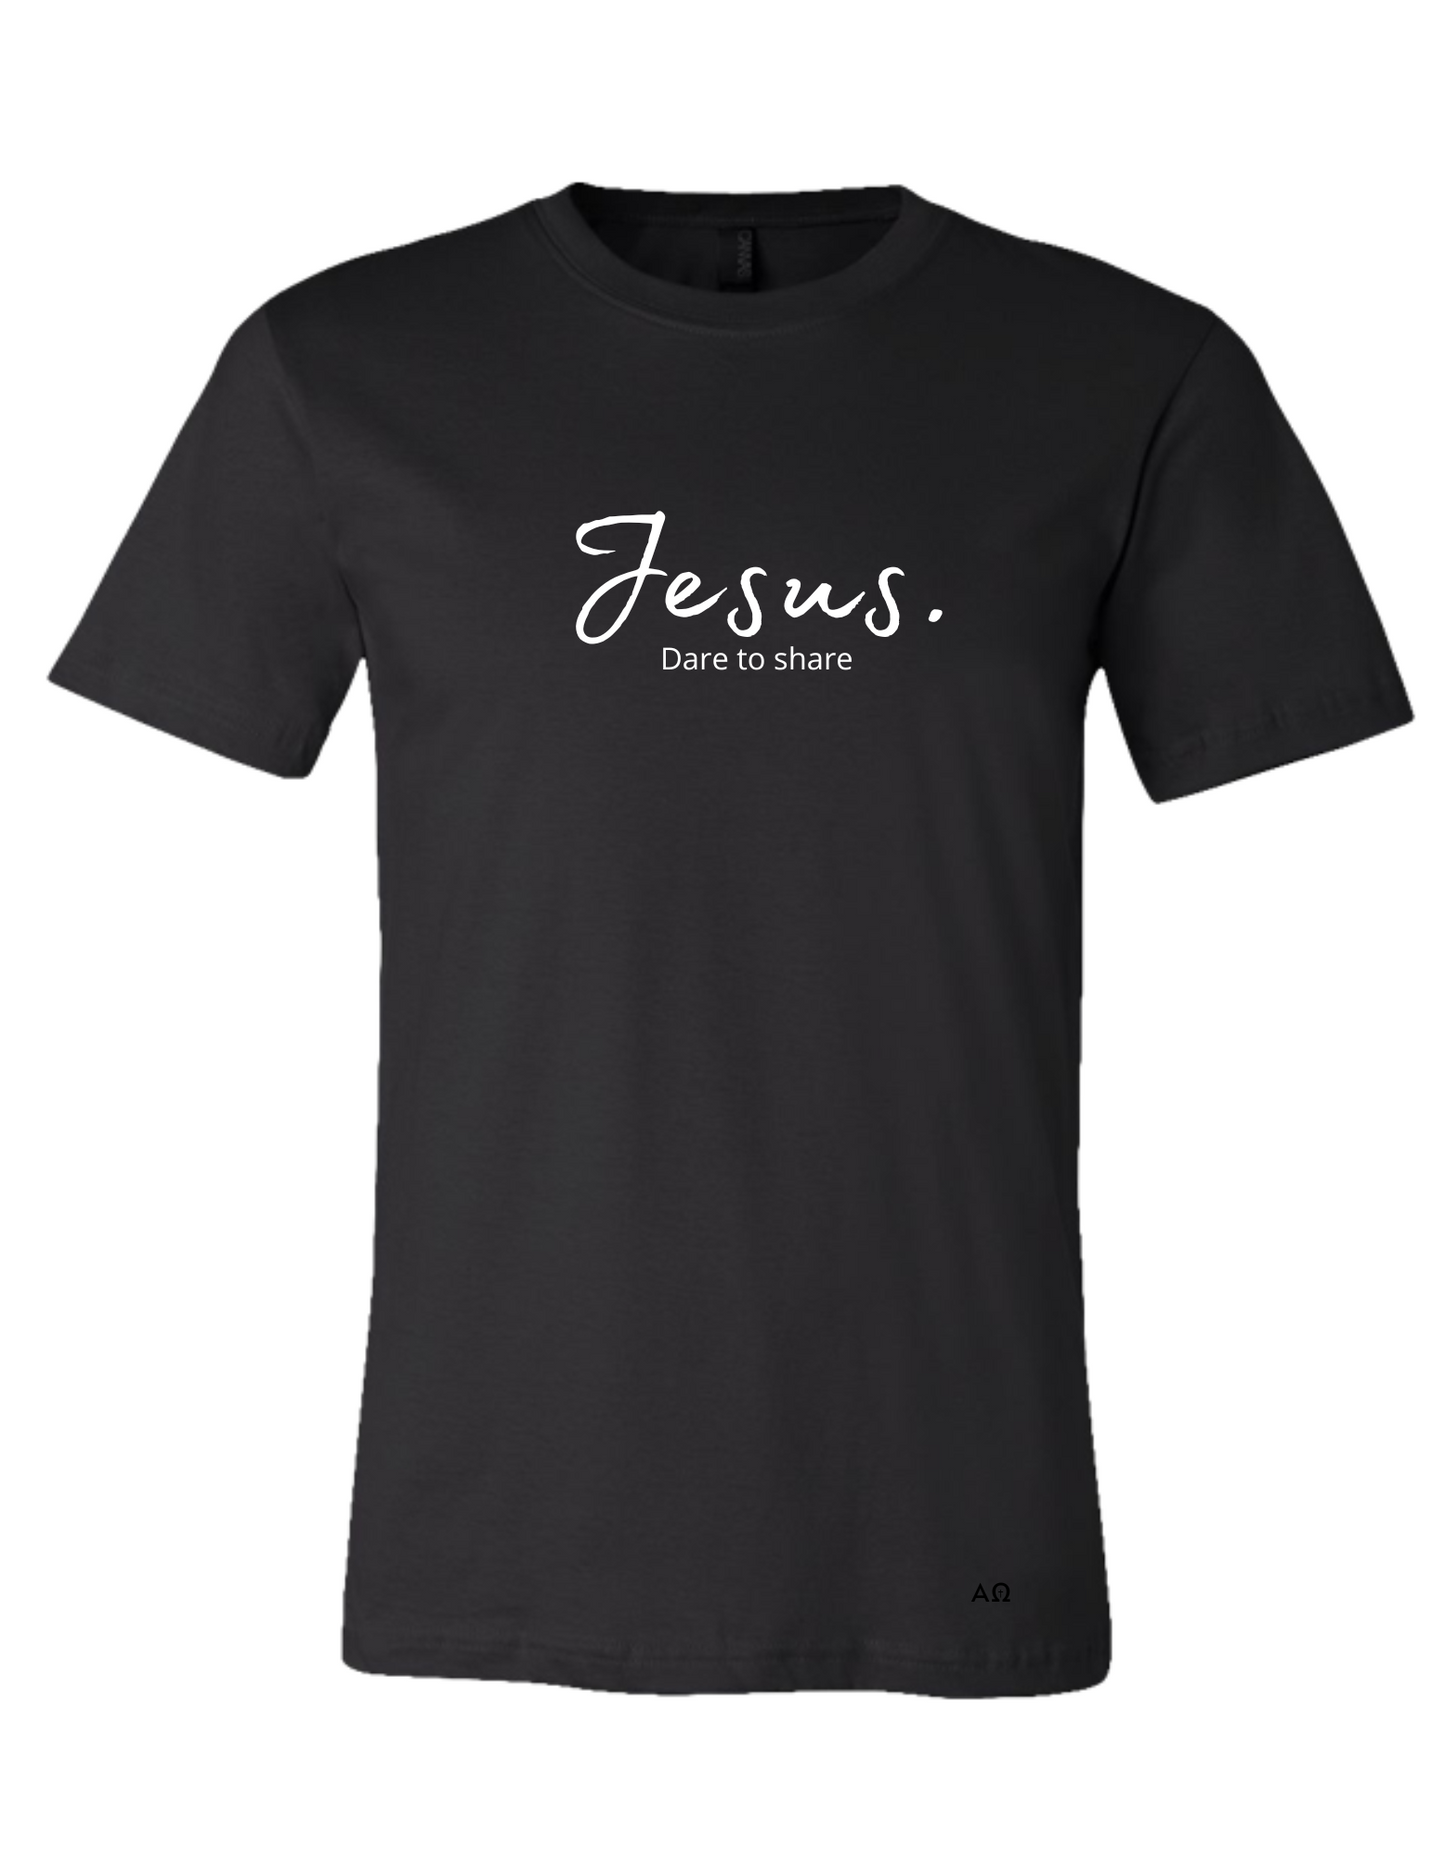 T-Shirt - Jesus. Dare to share.